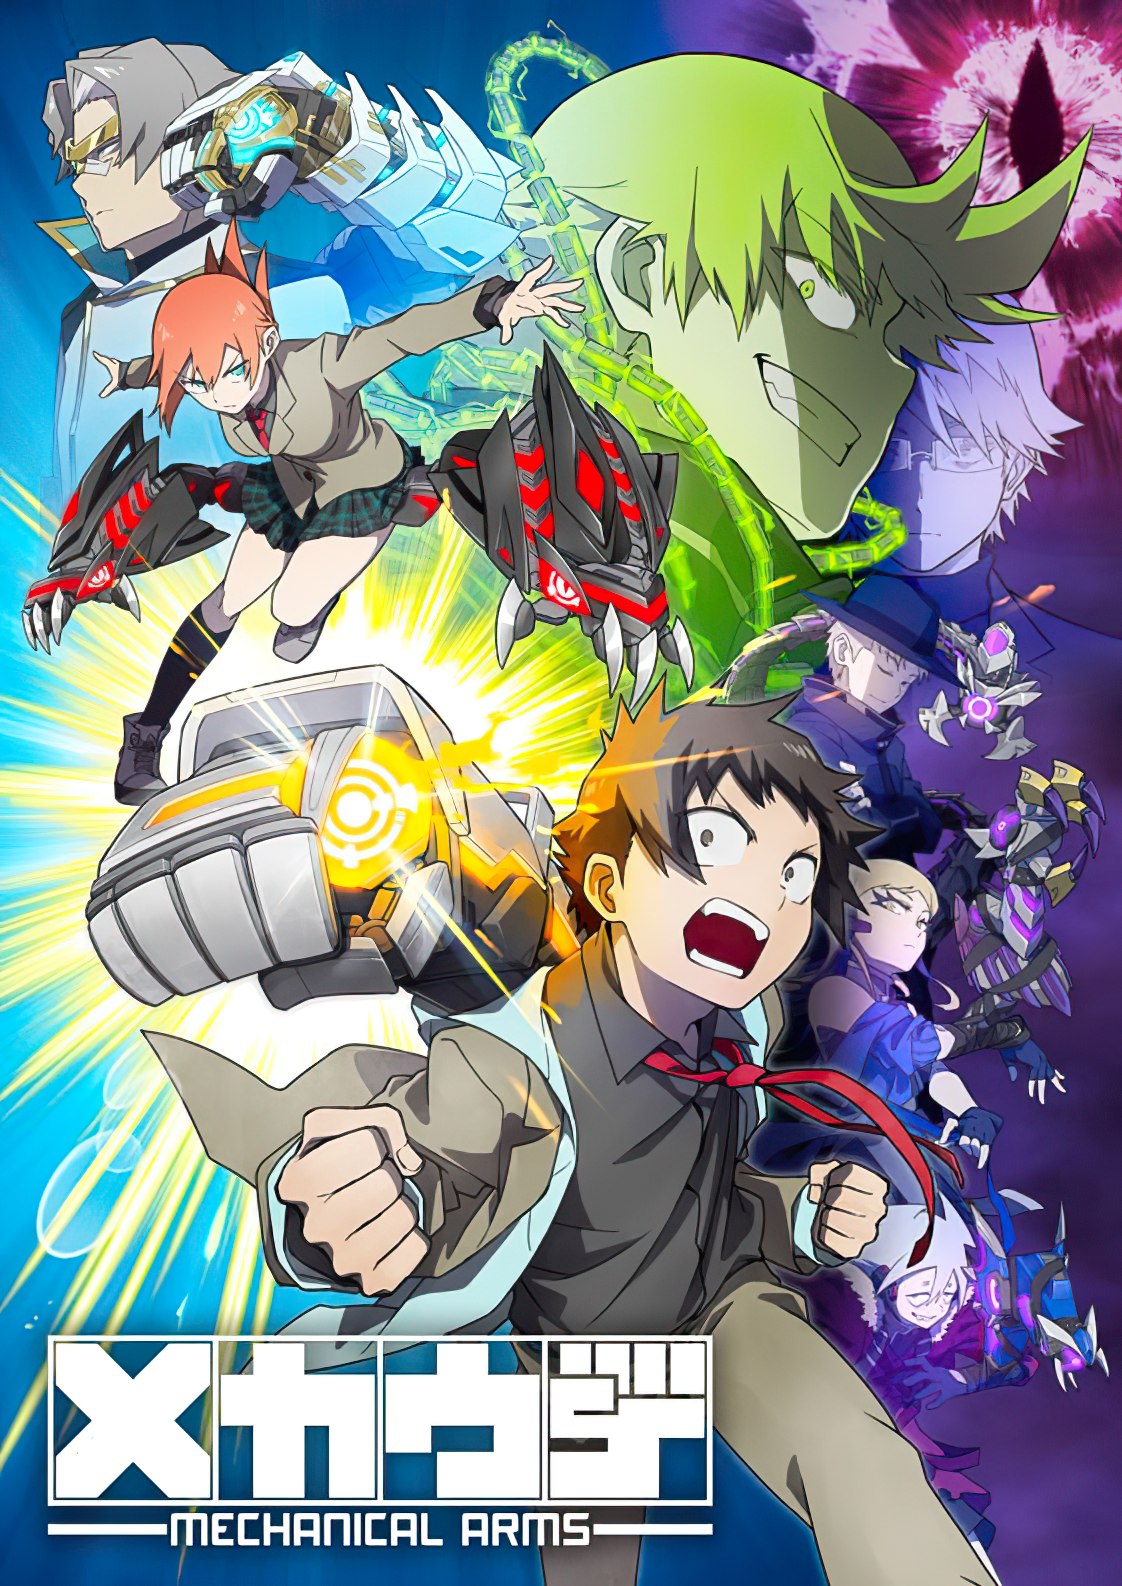 RikeKoi – 2º Temporada do anime já tem previsão de estreia